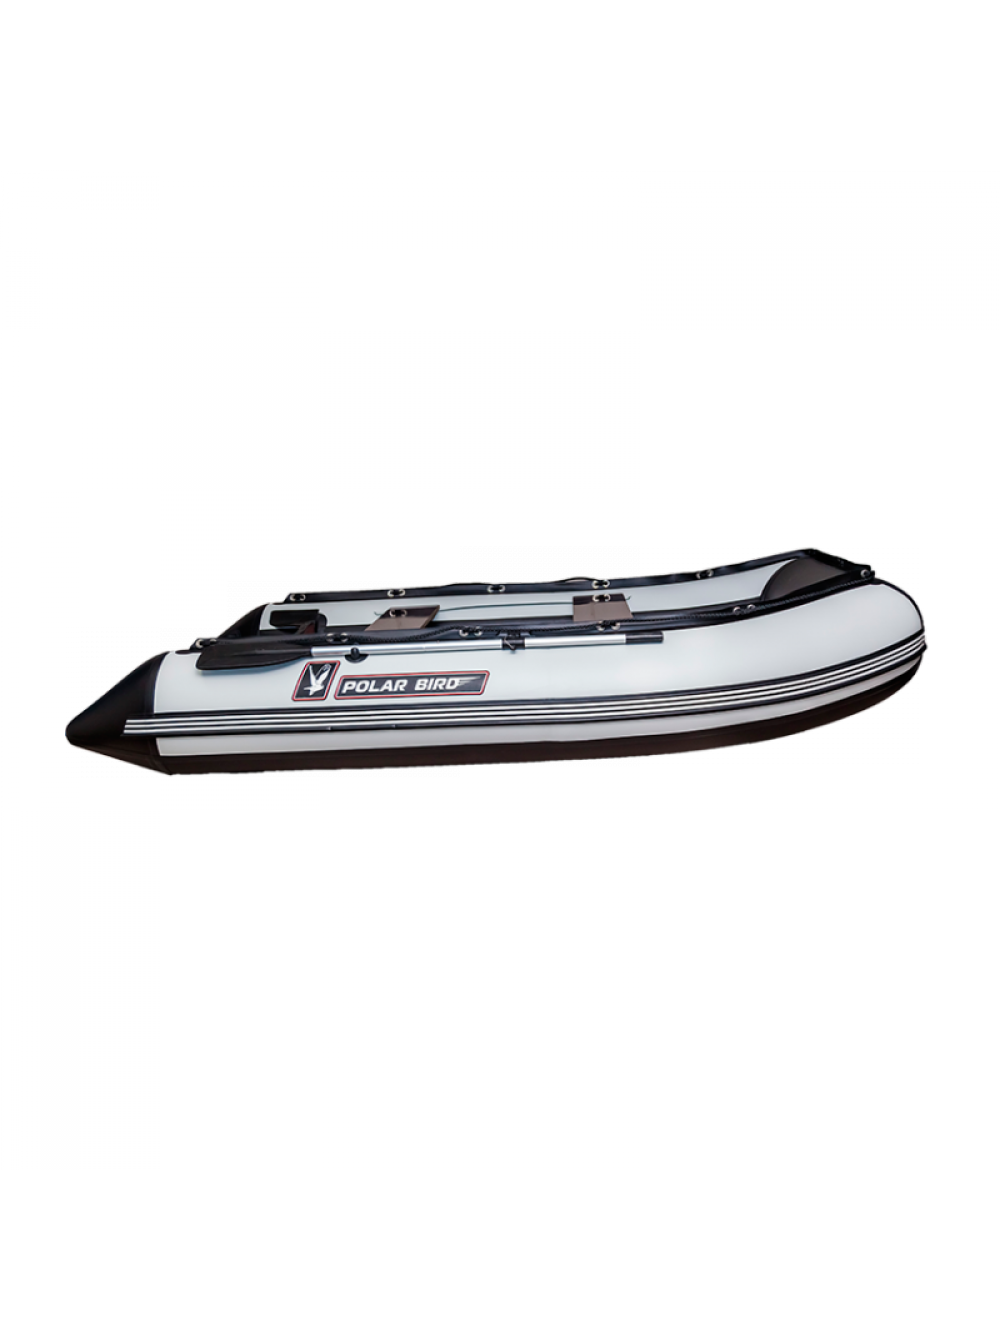 Лодки полар берд: отзывы, модельный ряд бренда polar bird, преимущества